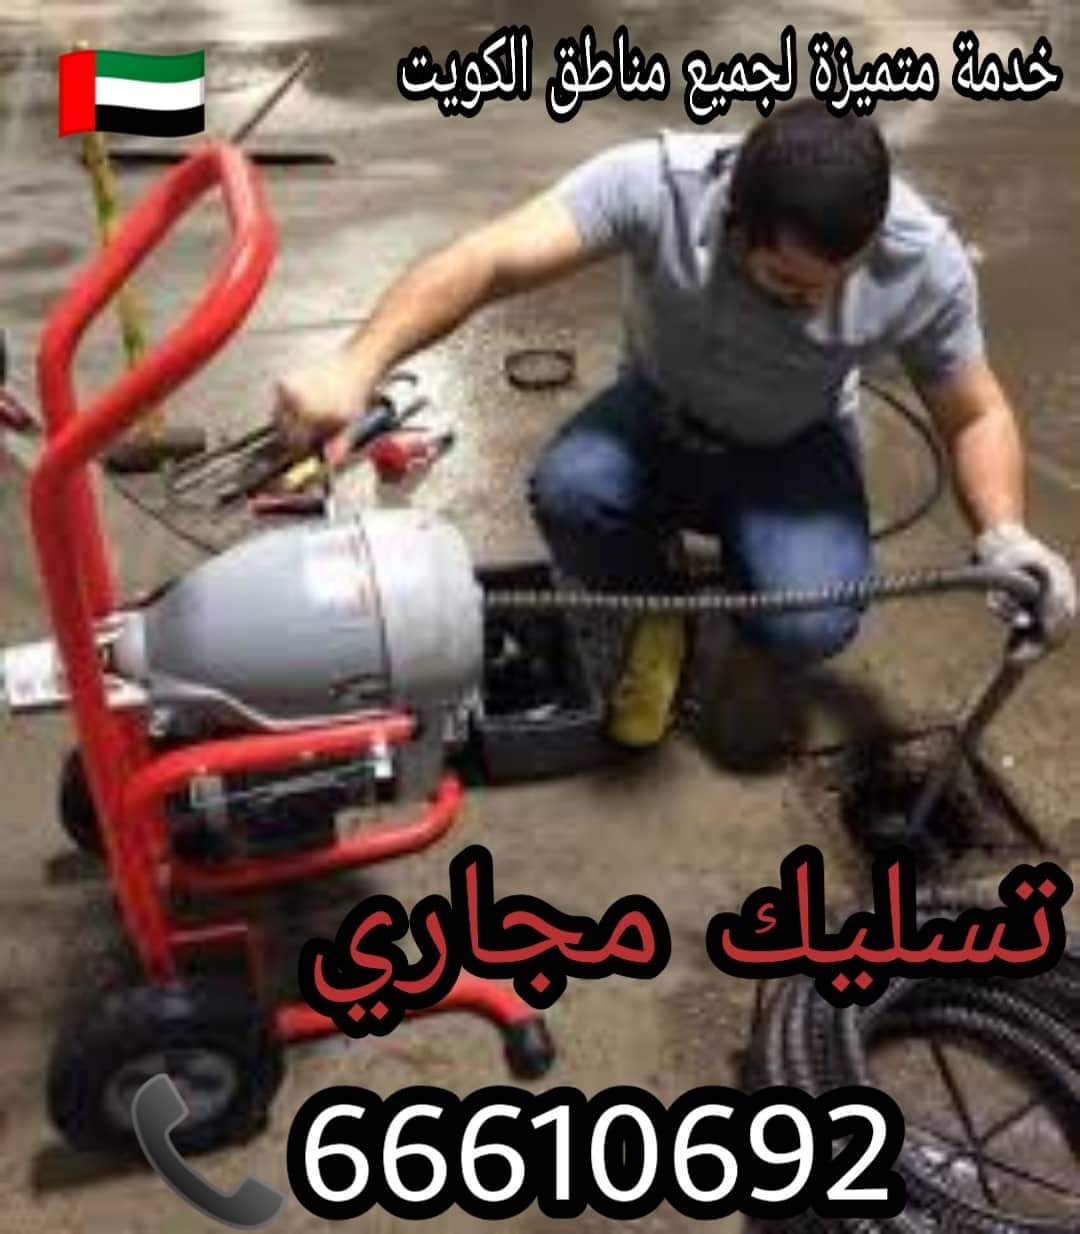 تسليك مجاري الرقة / 66610692 / صيانة وتركيب ادوات صحية الكويت